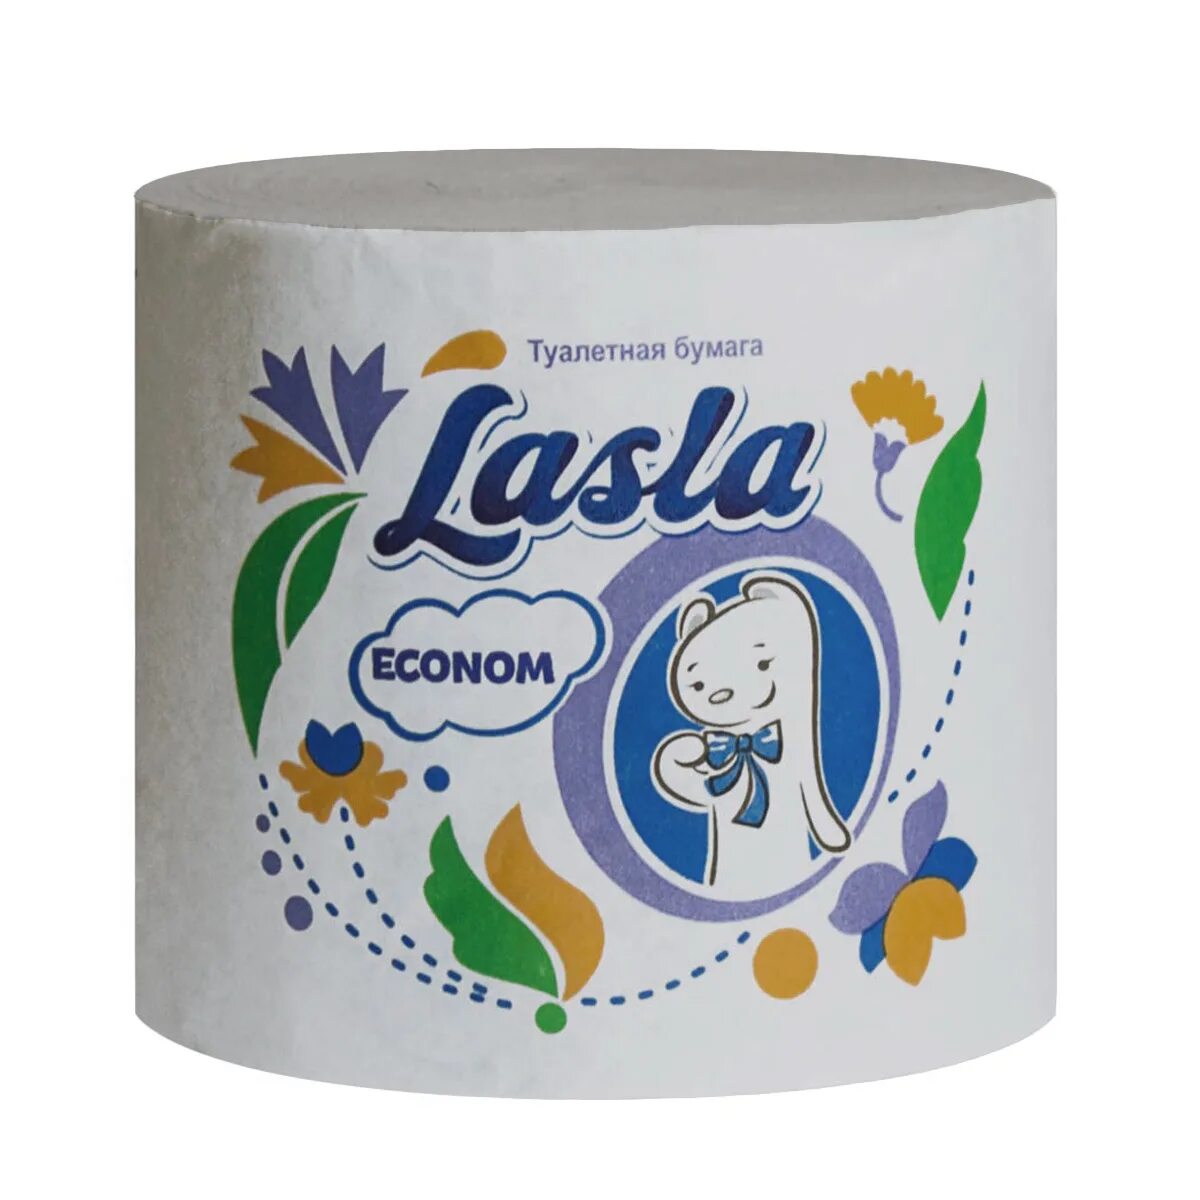 Туалетная бумага Lasla. Туалетная бумага Lasla Econom без втулки м-45. Туалетная бумага Lasla Econom м-45 33 м. Туалетная бумага Ласла эконом. Добрый купить оптом